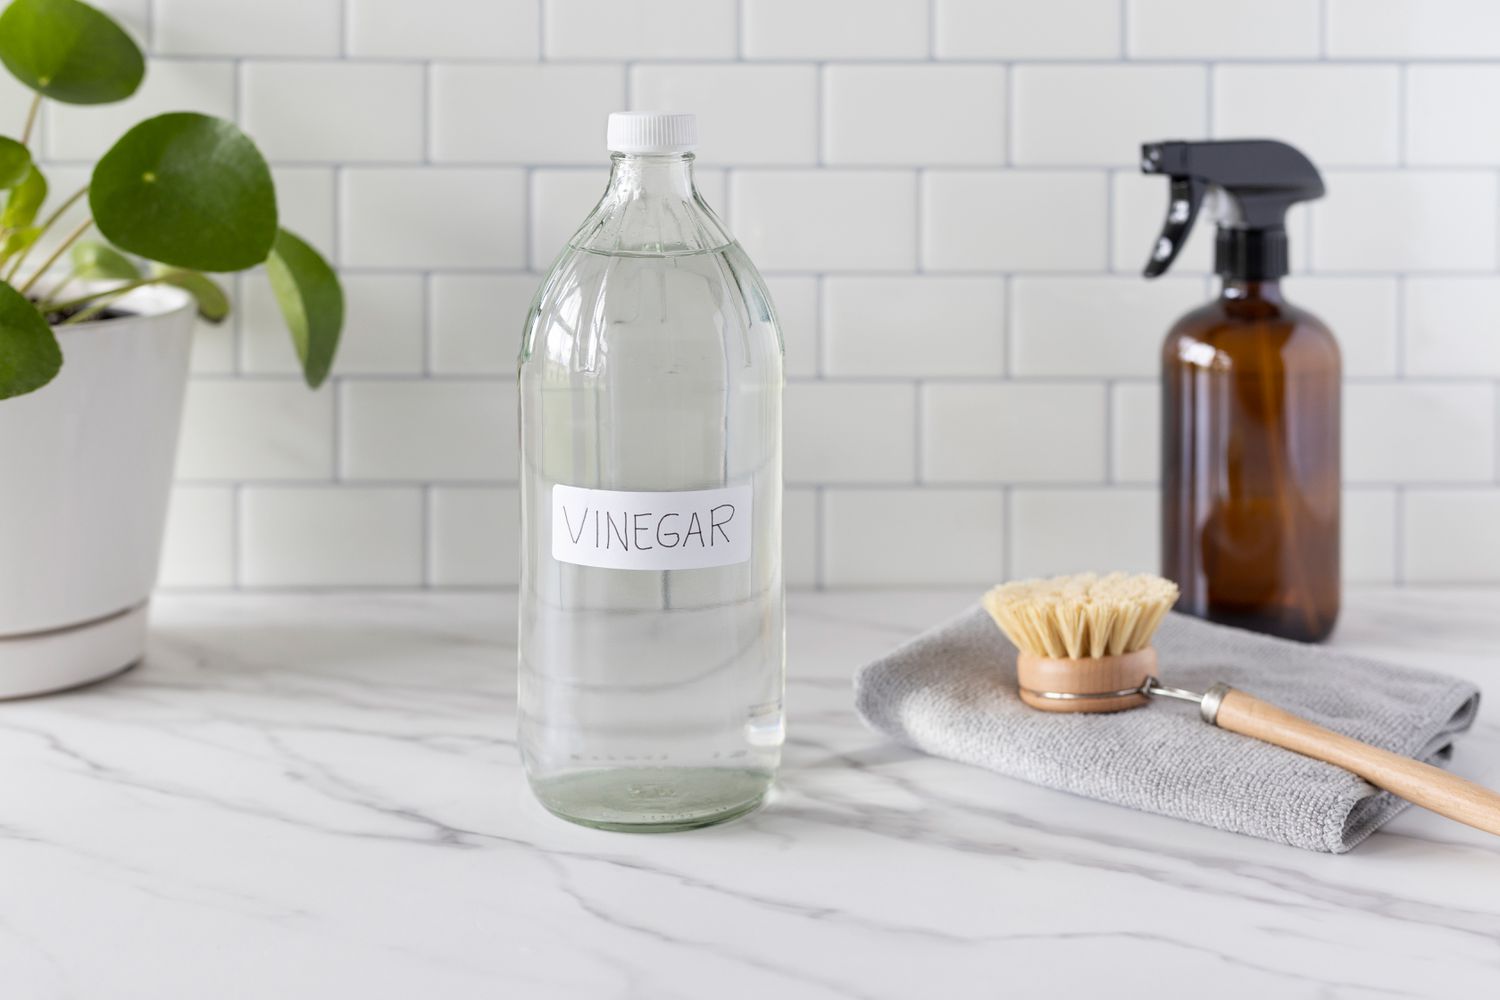 8 façons intelligentes d’utiliser le vinaigre pour nettoyer votre maison